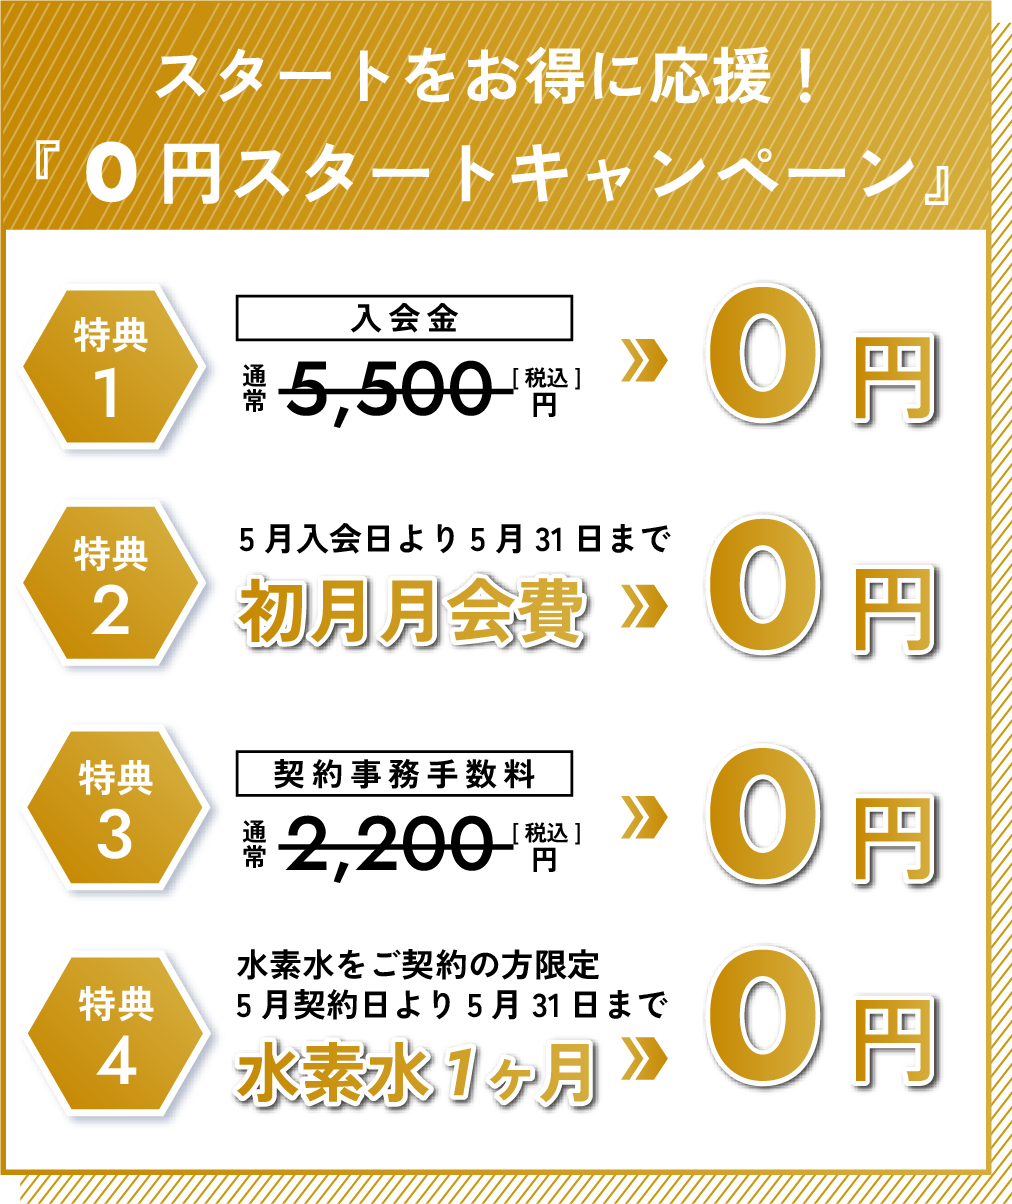 『0円スタートキャンペーン』